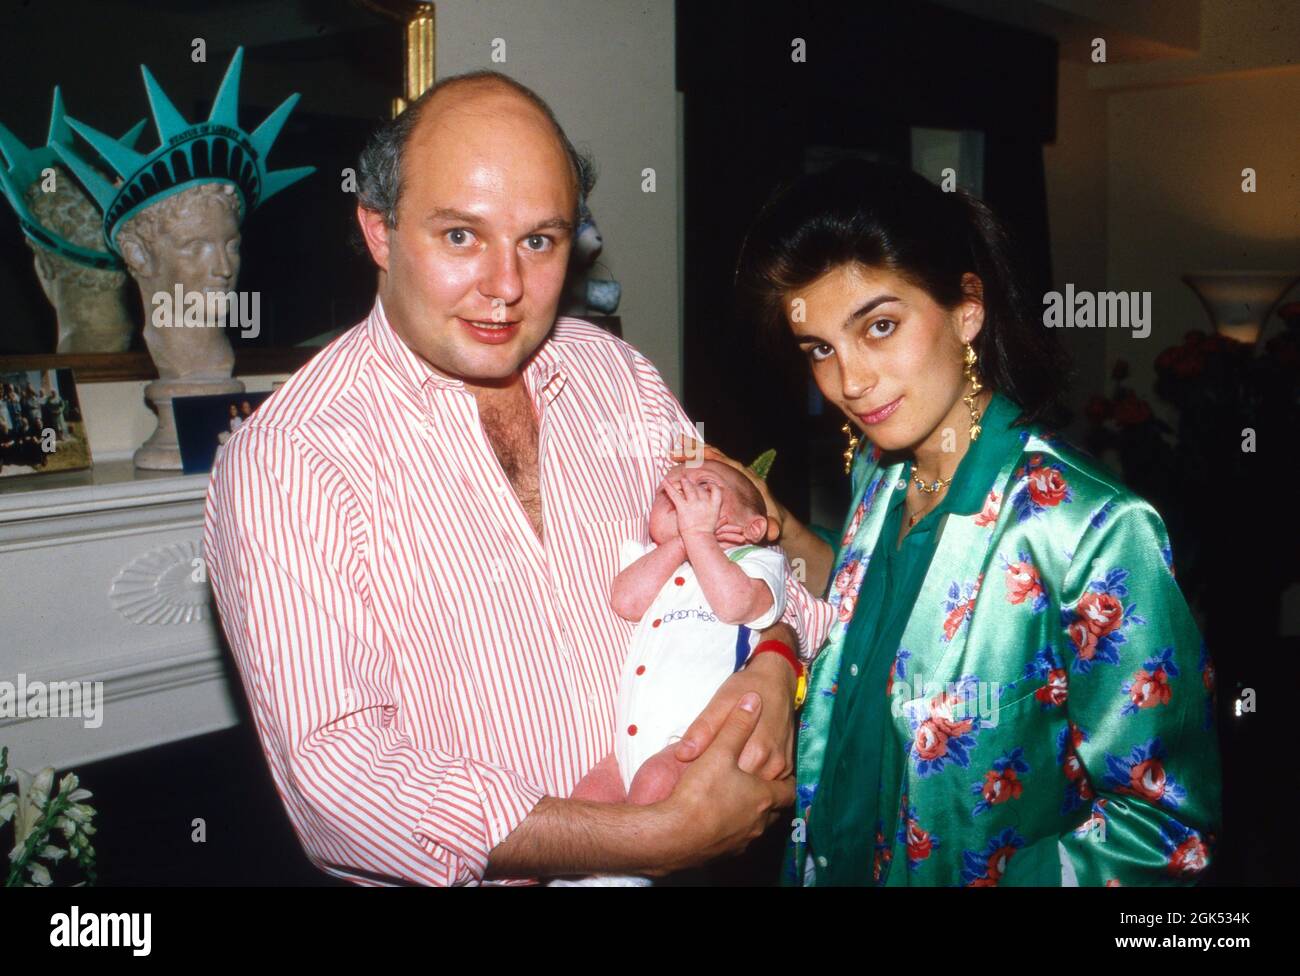 Rolf Sachs mit Ehefrau Maryam und dem neugeborenen Sohn Philipp Gunter, Deutschland 1986. Rolf Sachs con la moglie Maryam e il figlio nascente Philipp Gunter, Germania 1986. Foto Stock